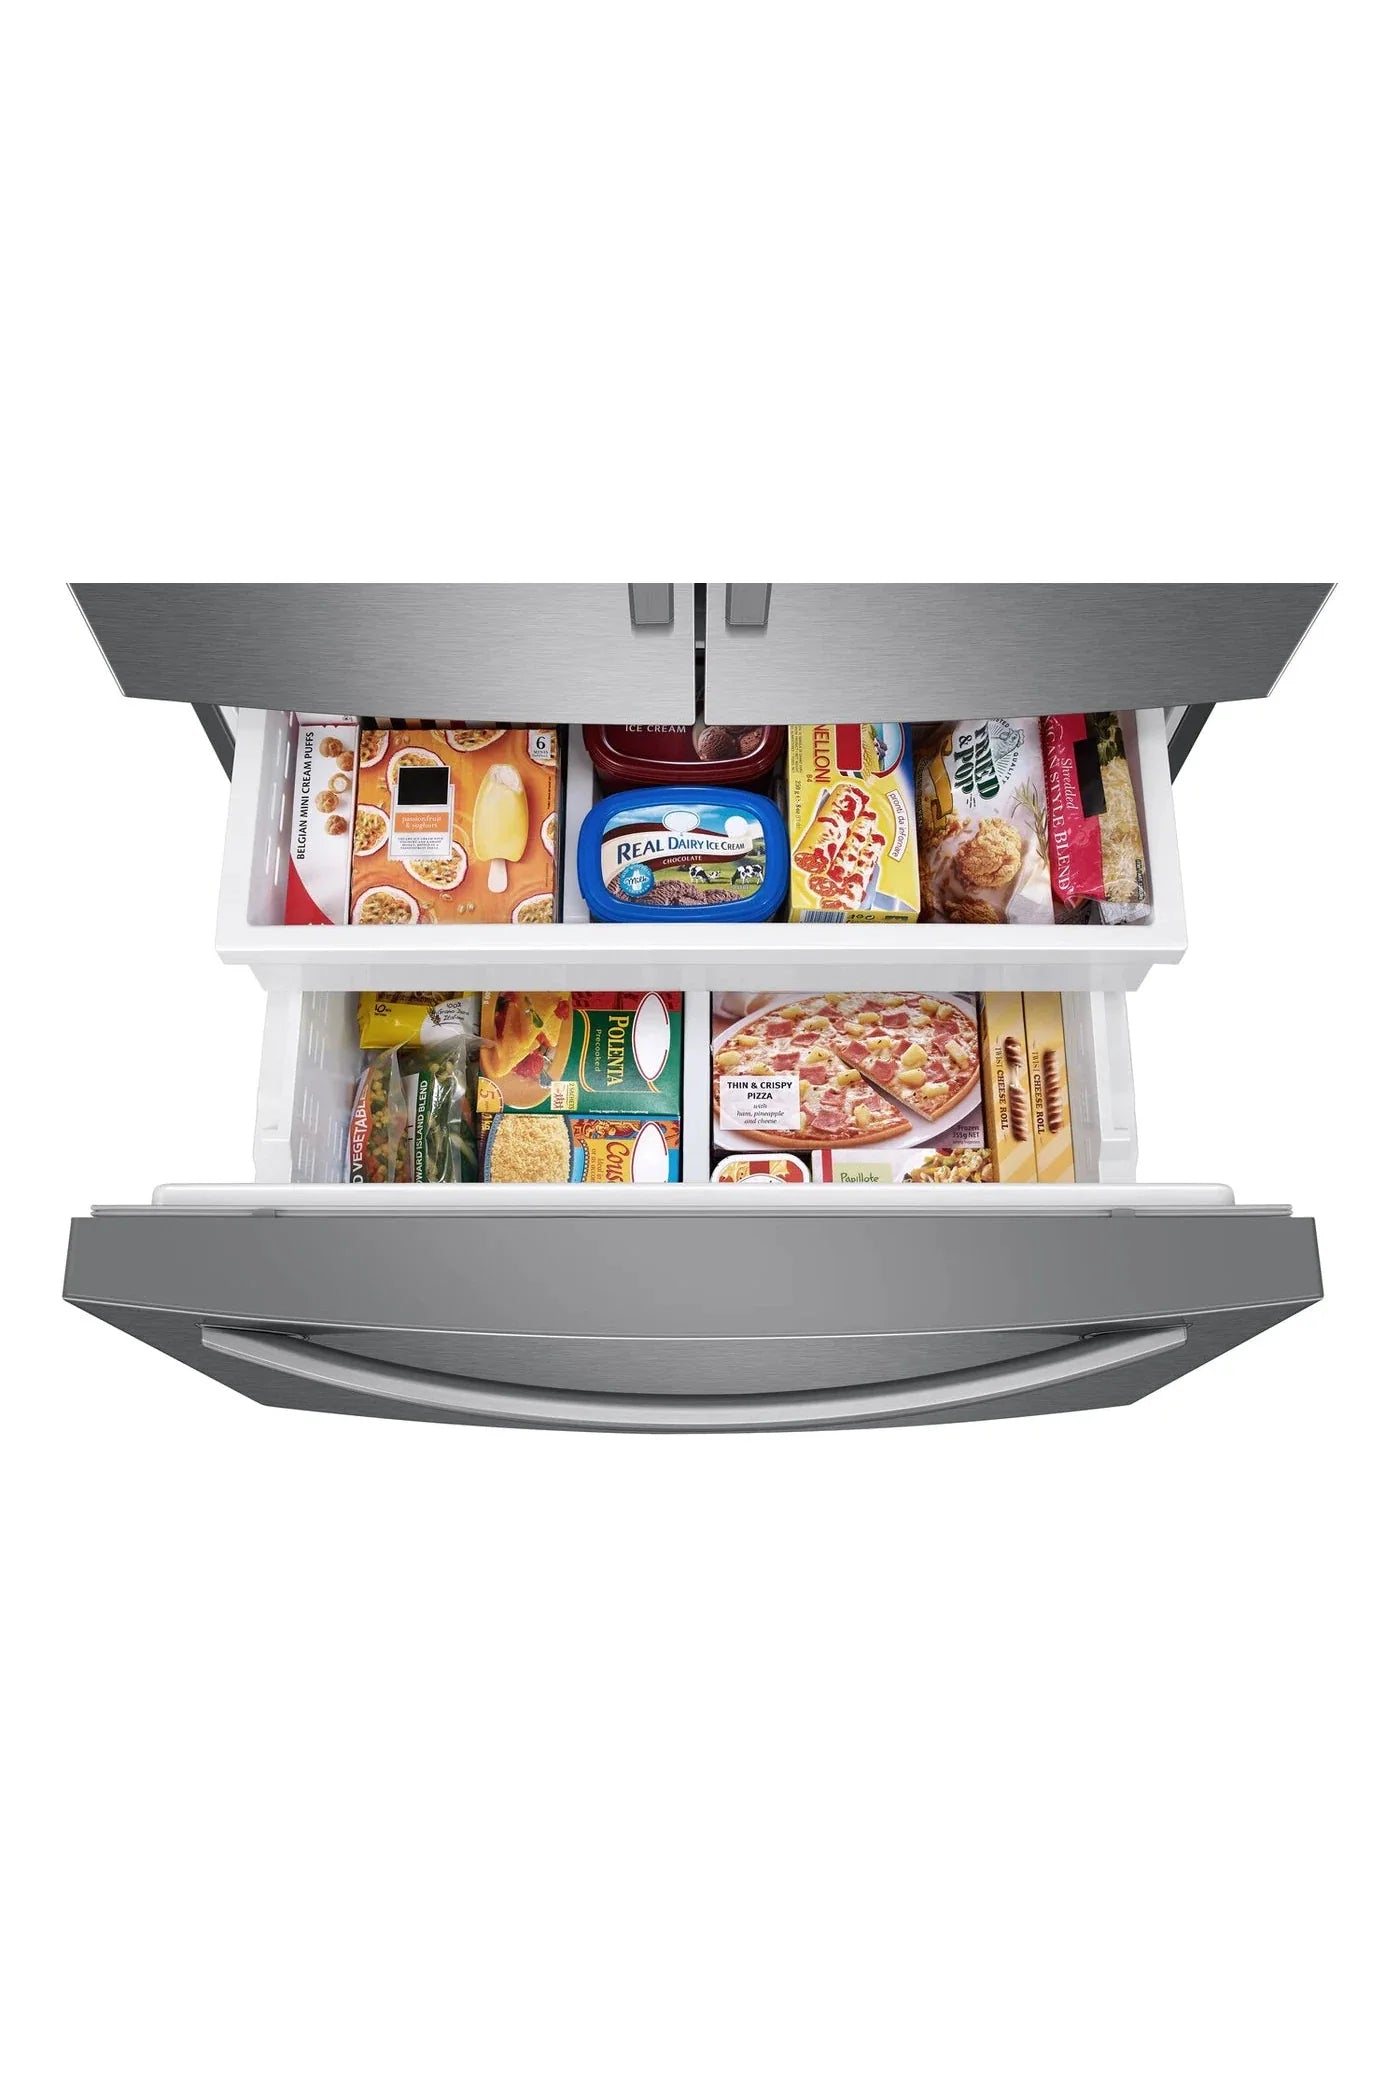 Samsung Refrigerator 36" Stainless Steel RF27T5201SR - Appliance Bazaar